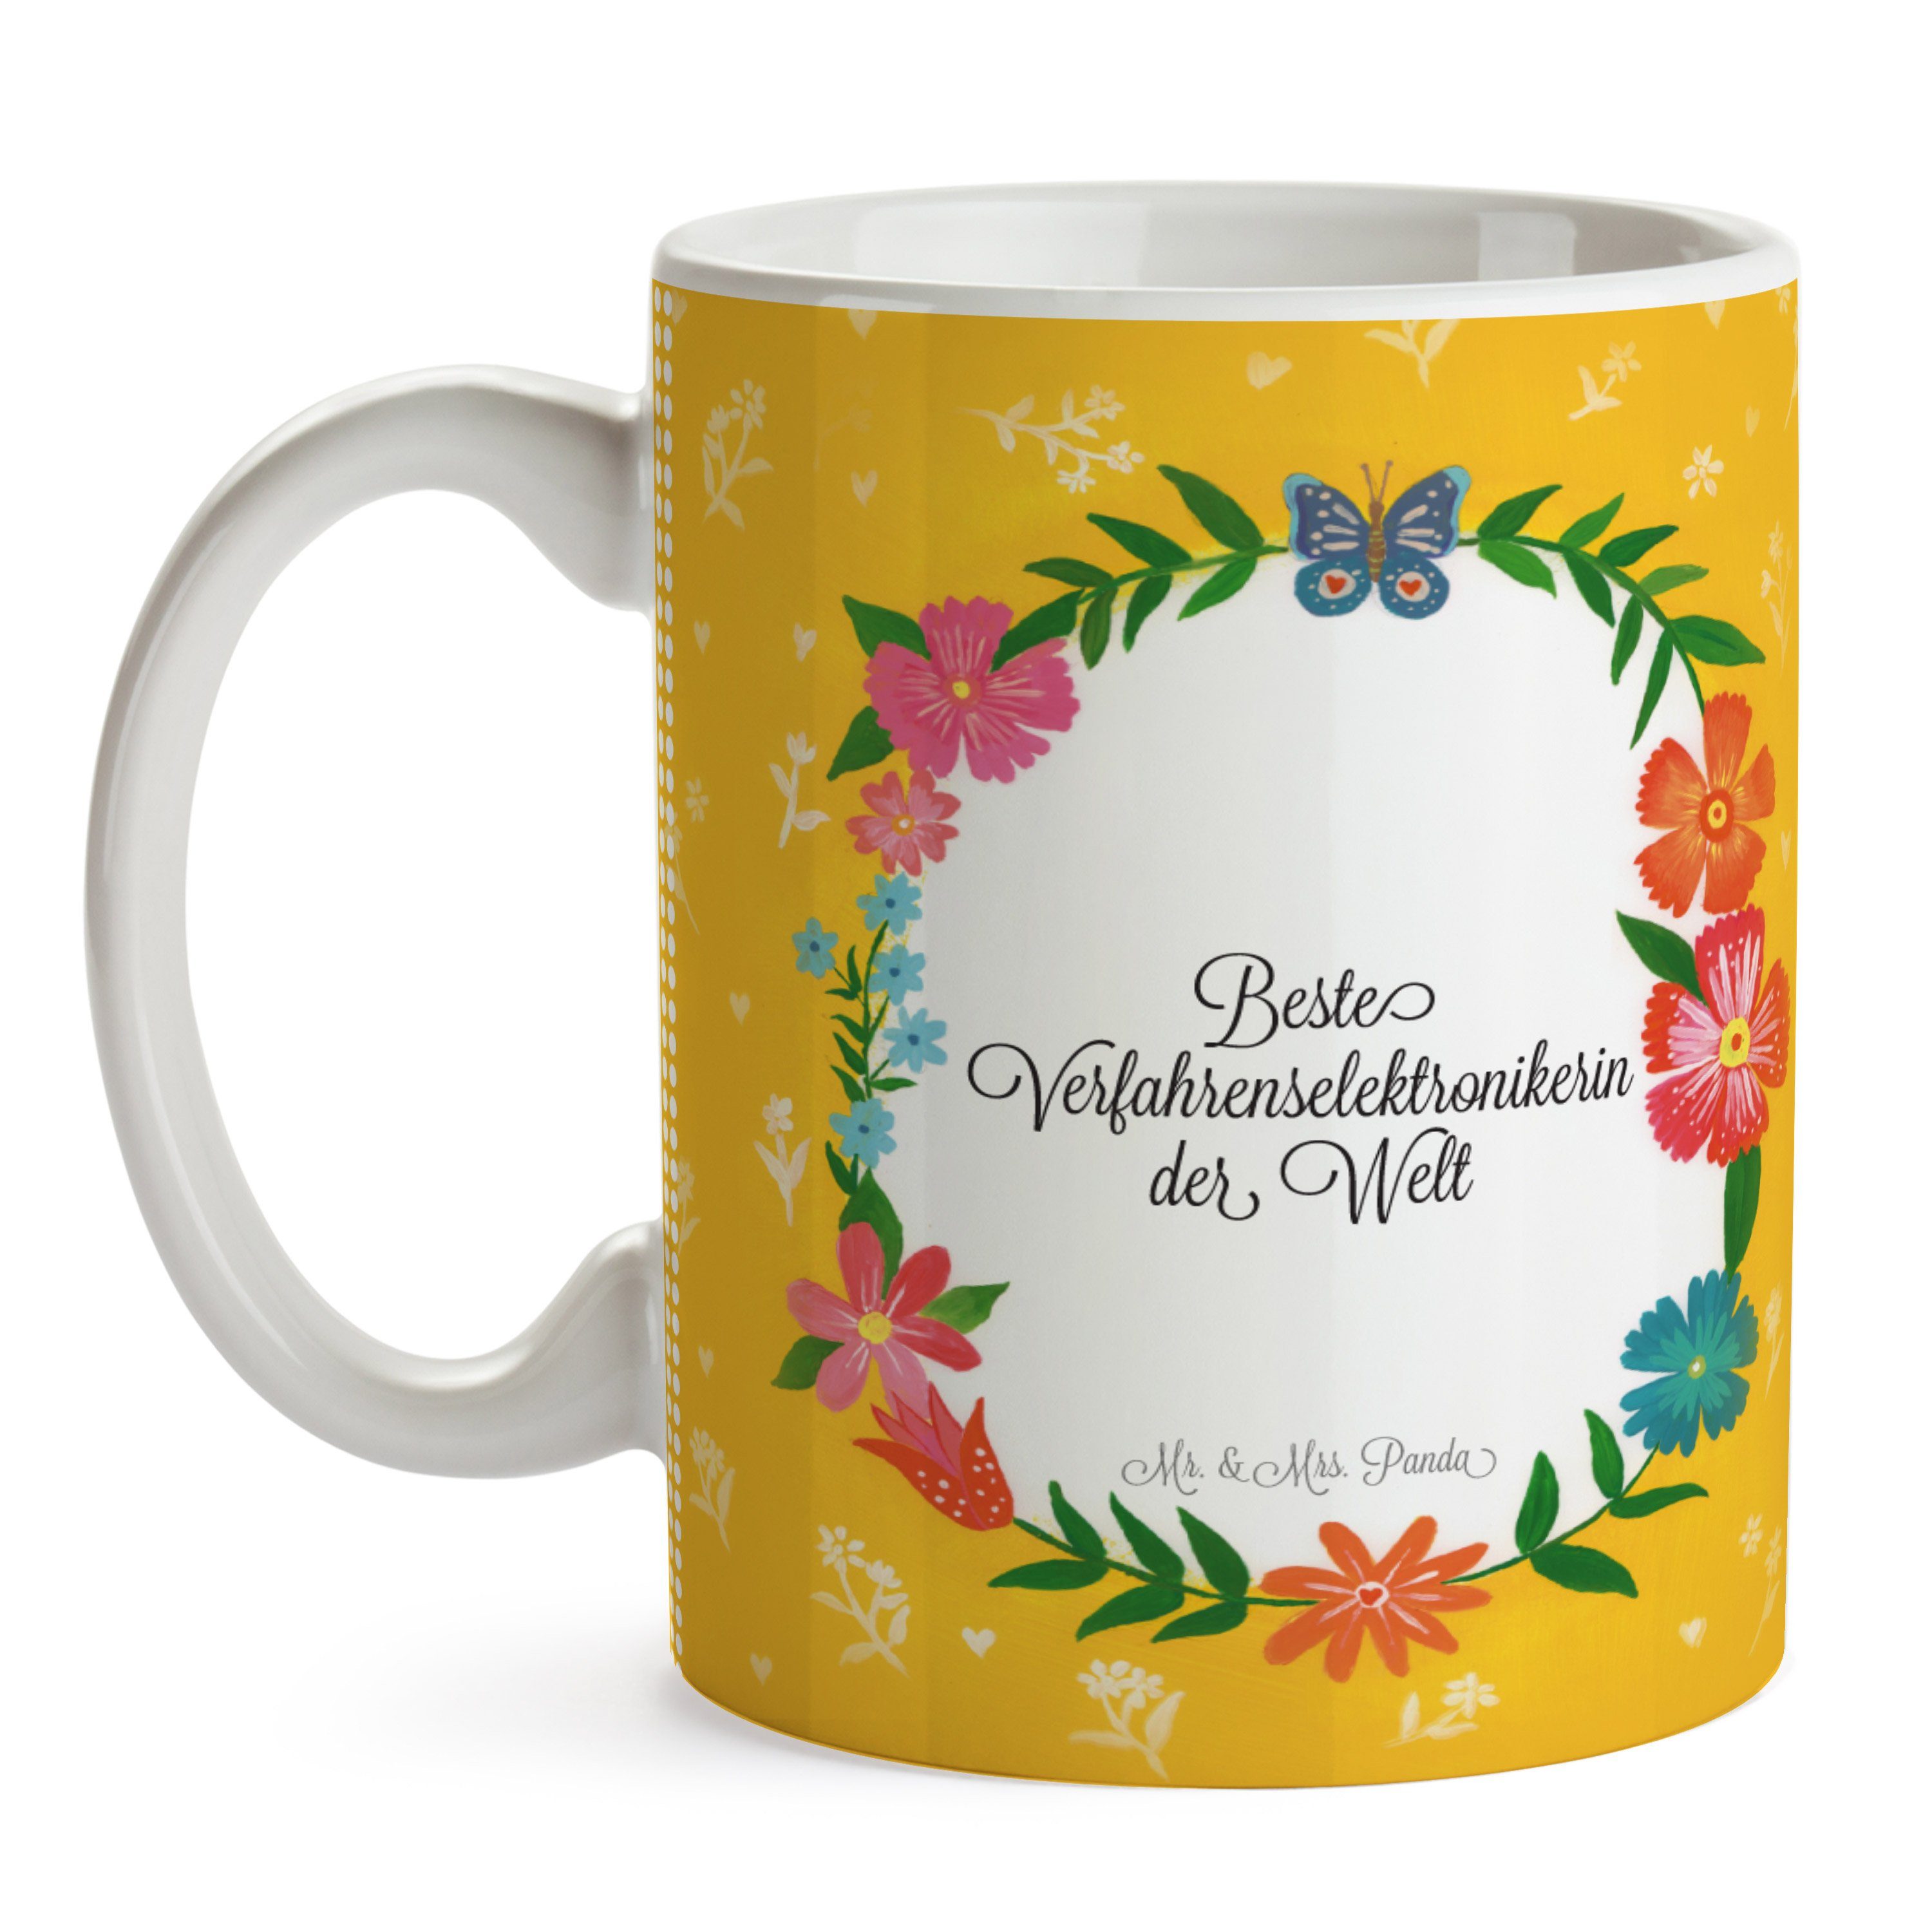 Keramik Tasse Ausbi, - Gratulation, & Geschenk, Mrs. Panda Verfahrenselektronikerin Kaffeebecher, Mr.